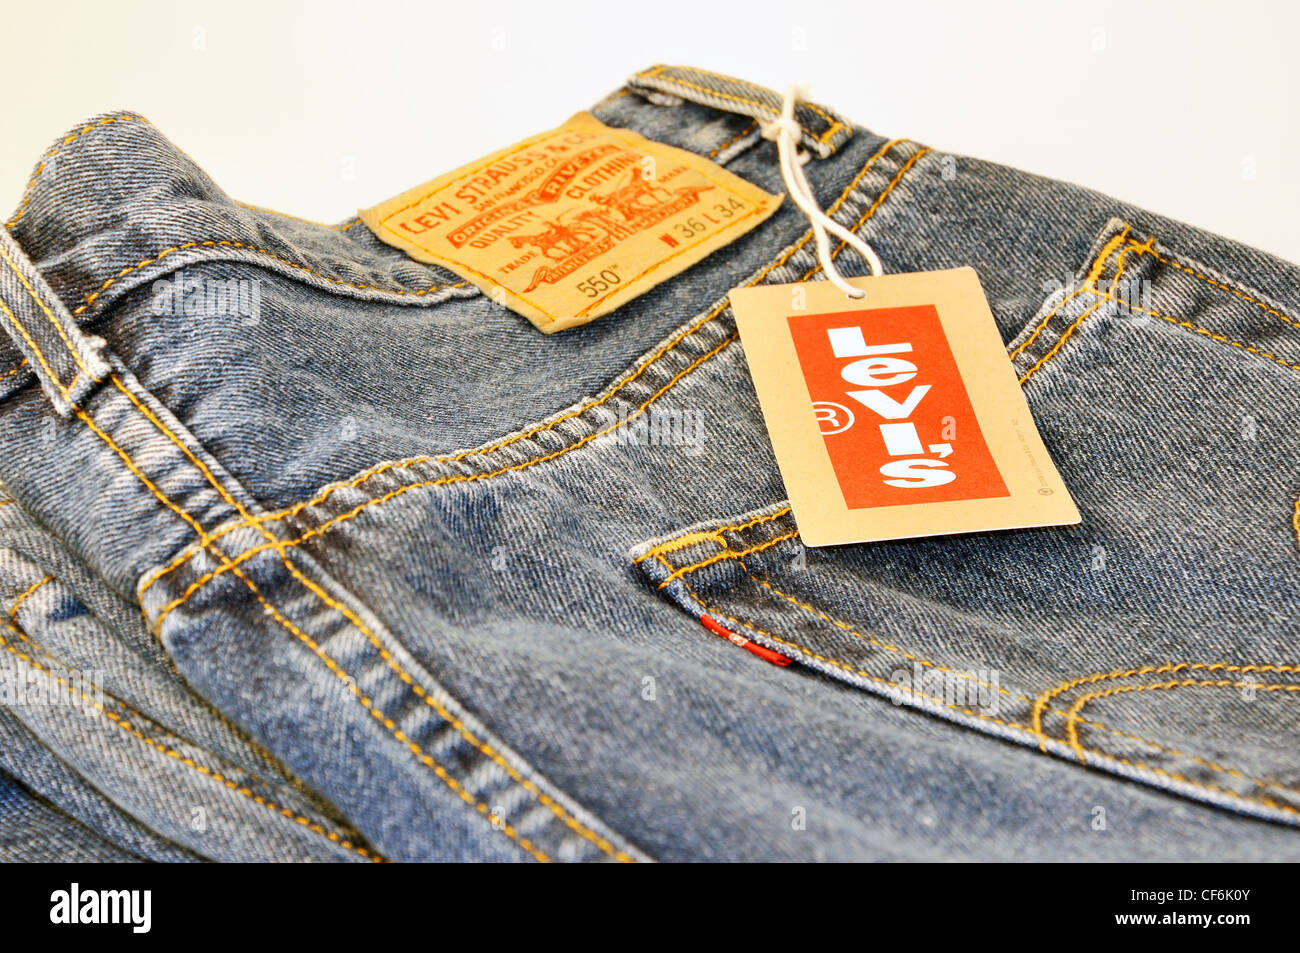 Levi's Jeans Label Stock Photos & Levi's Jeans Label Stock Images - Alamy